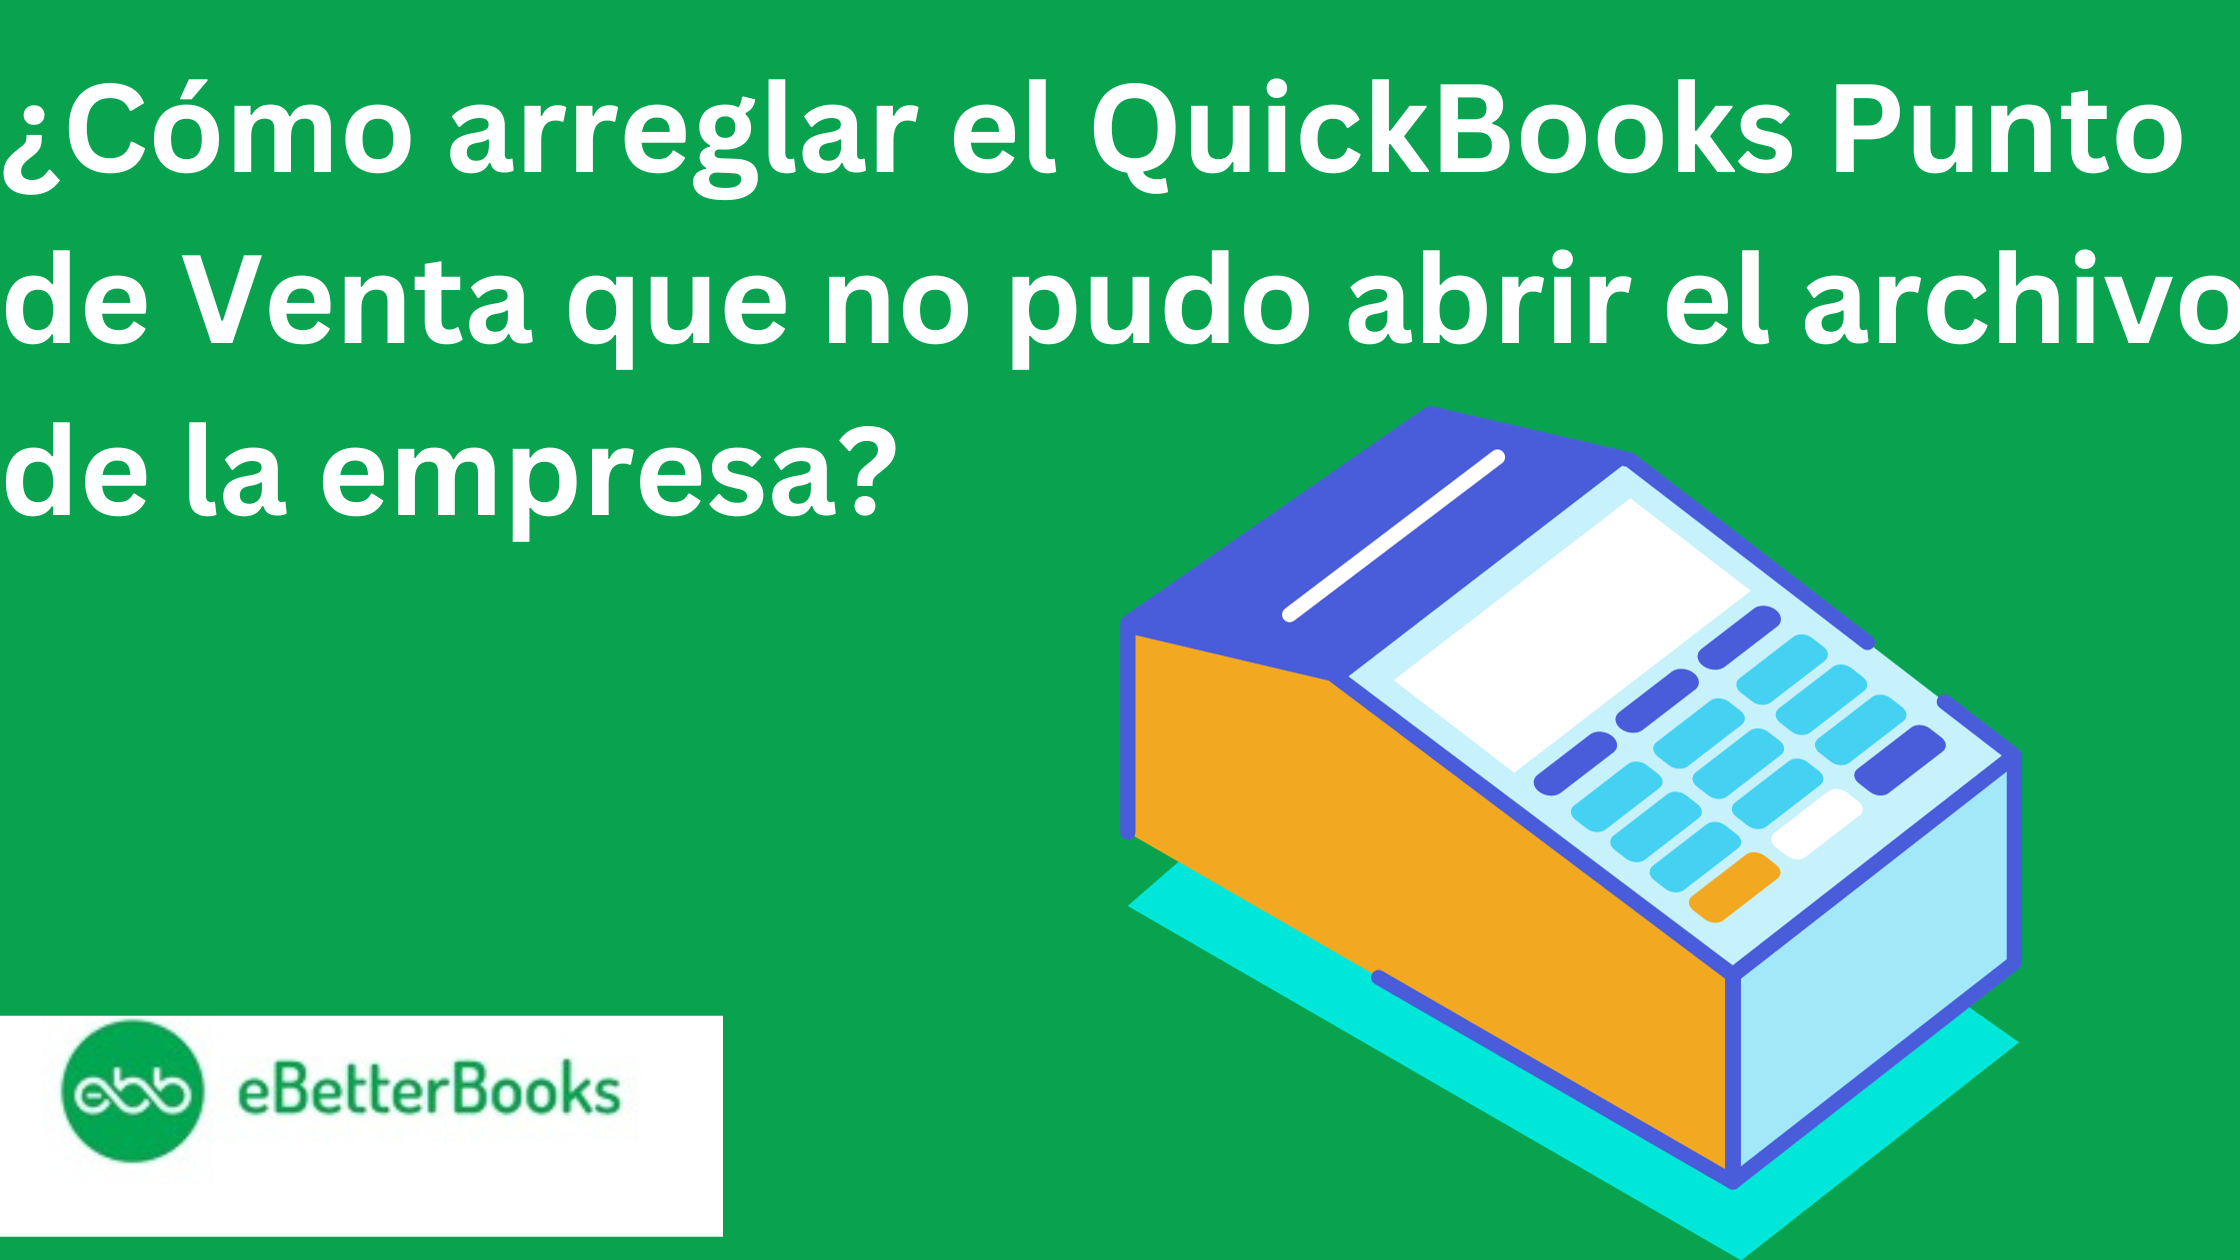 QuickBooks Punto de Venta que no pudo abrir el archivo de la empresa